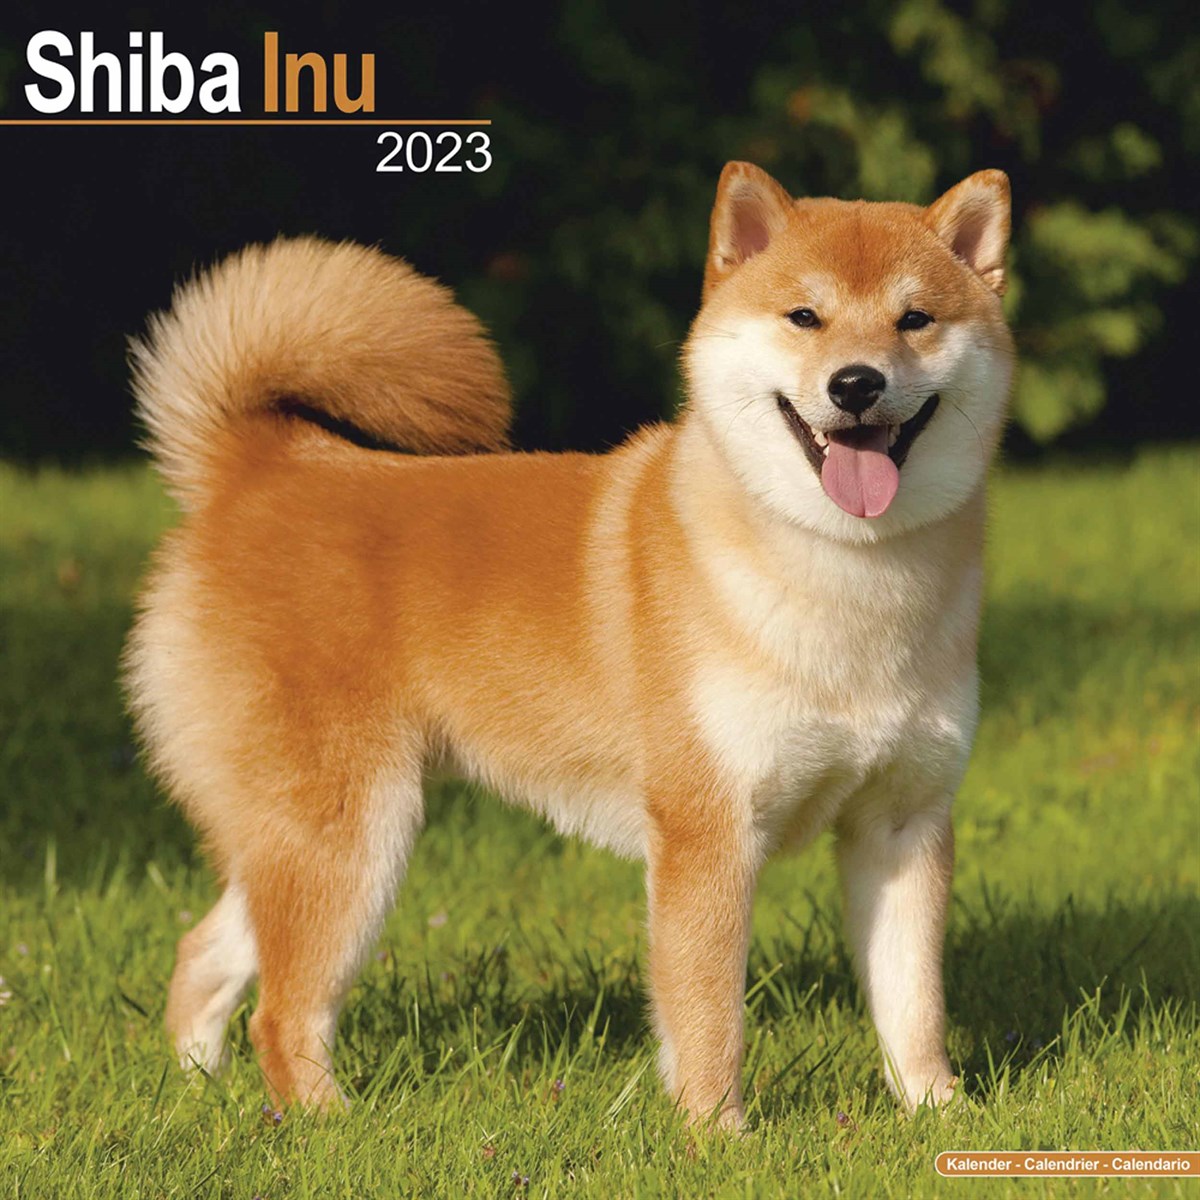 Shiba Inu 2023 Calendars